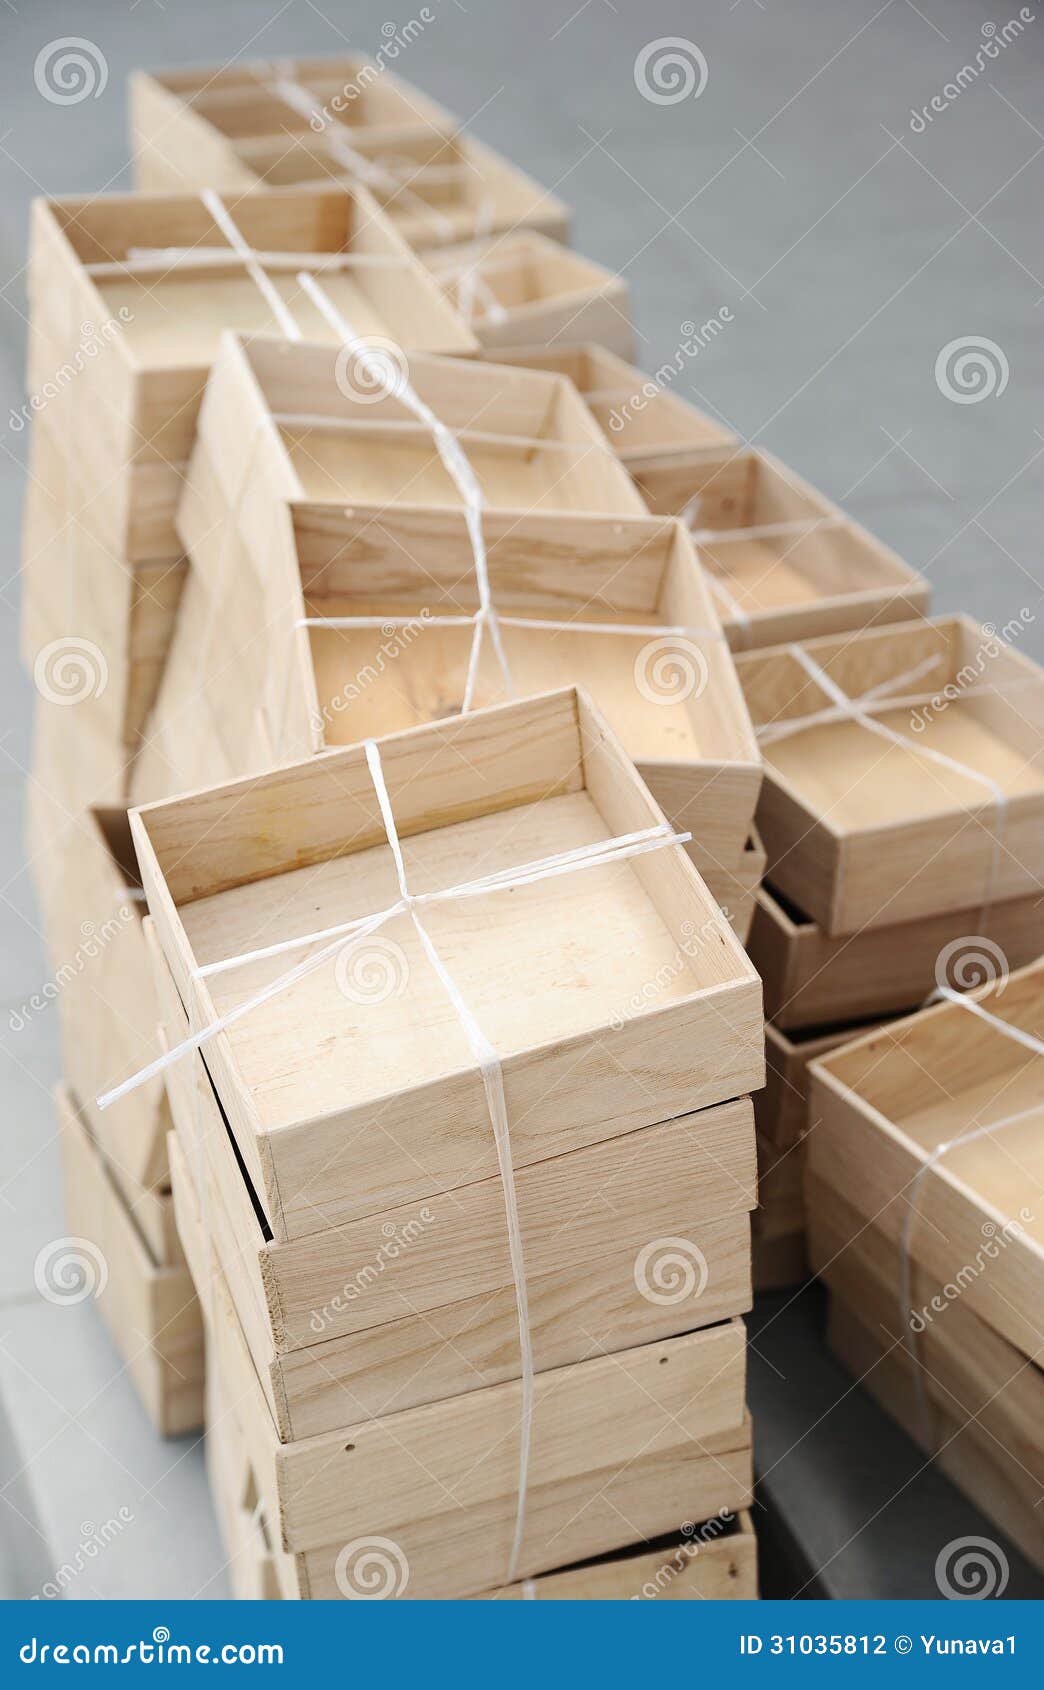 Wooden Boxes 库存照片 图片包括有棚车 运输 编号 存贮 剪切 正方形 简单